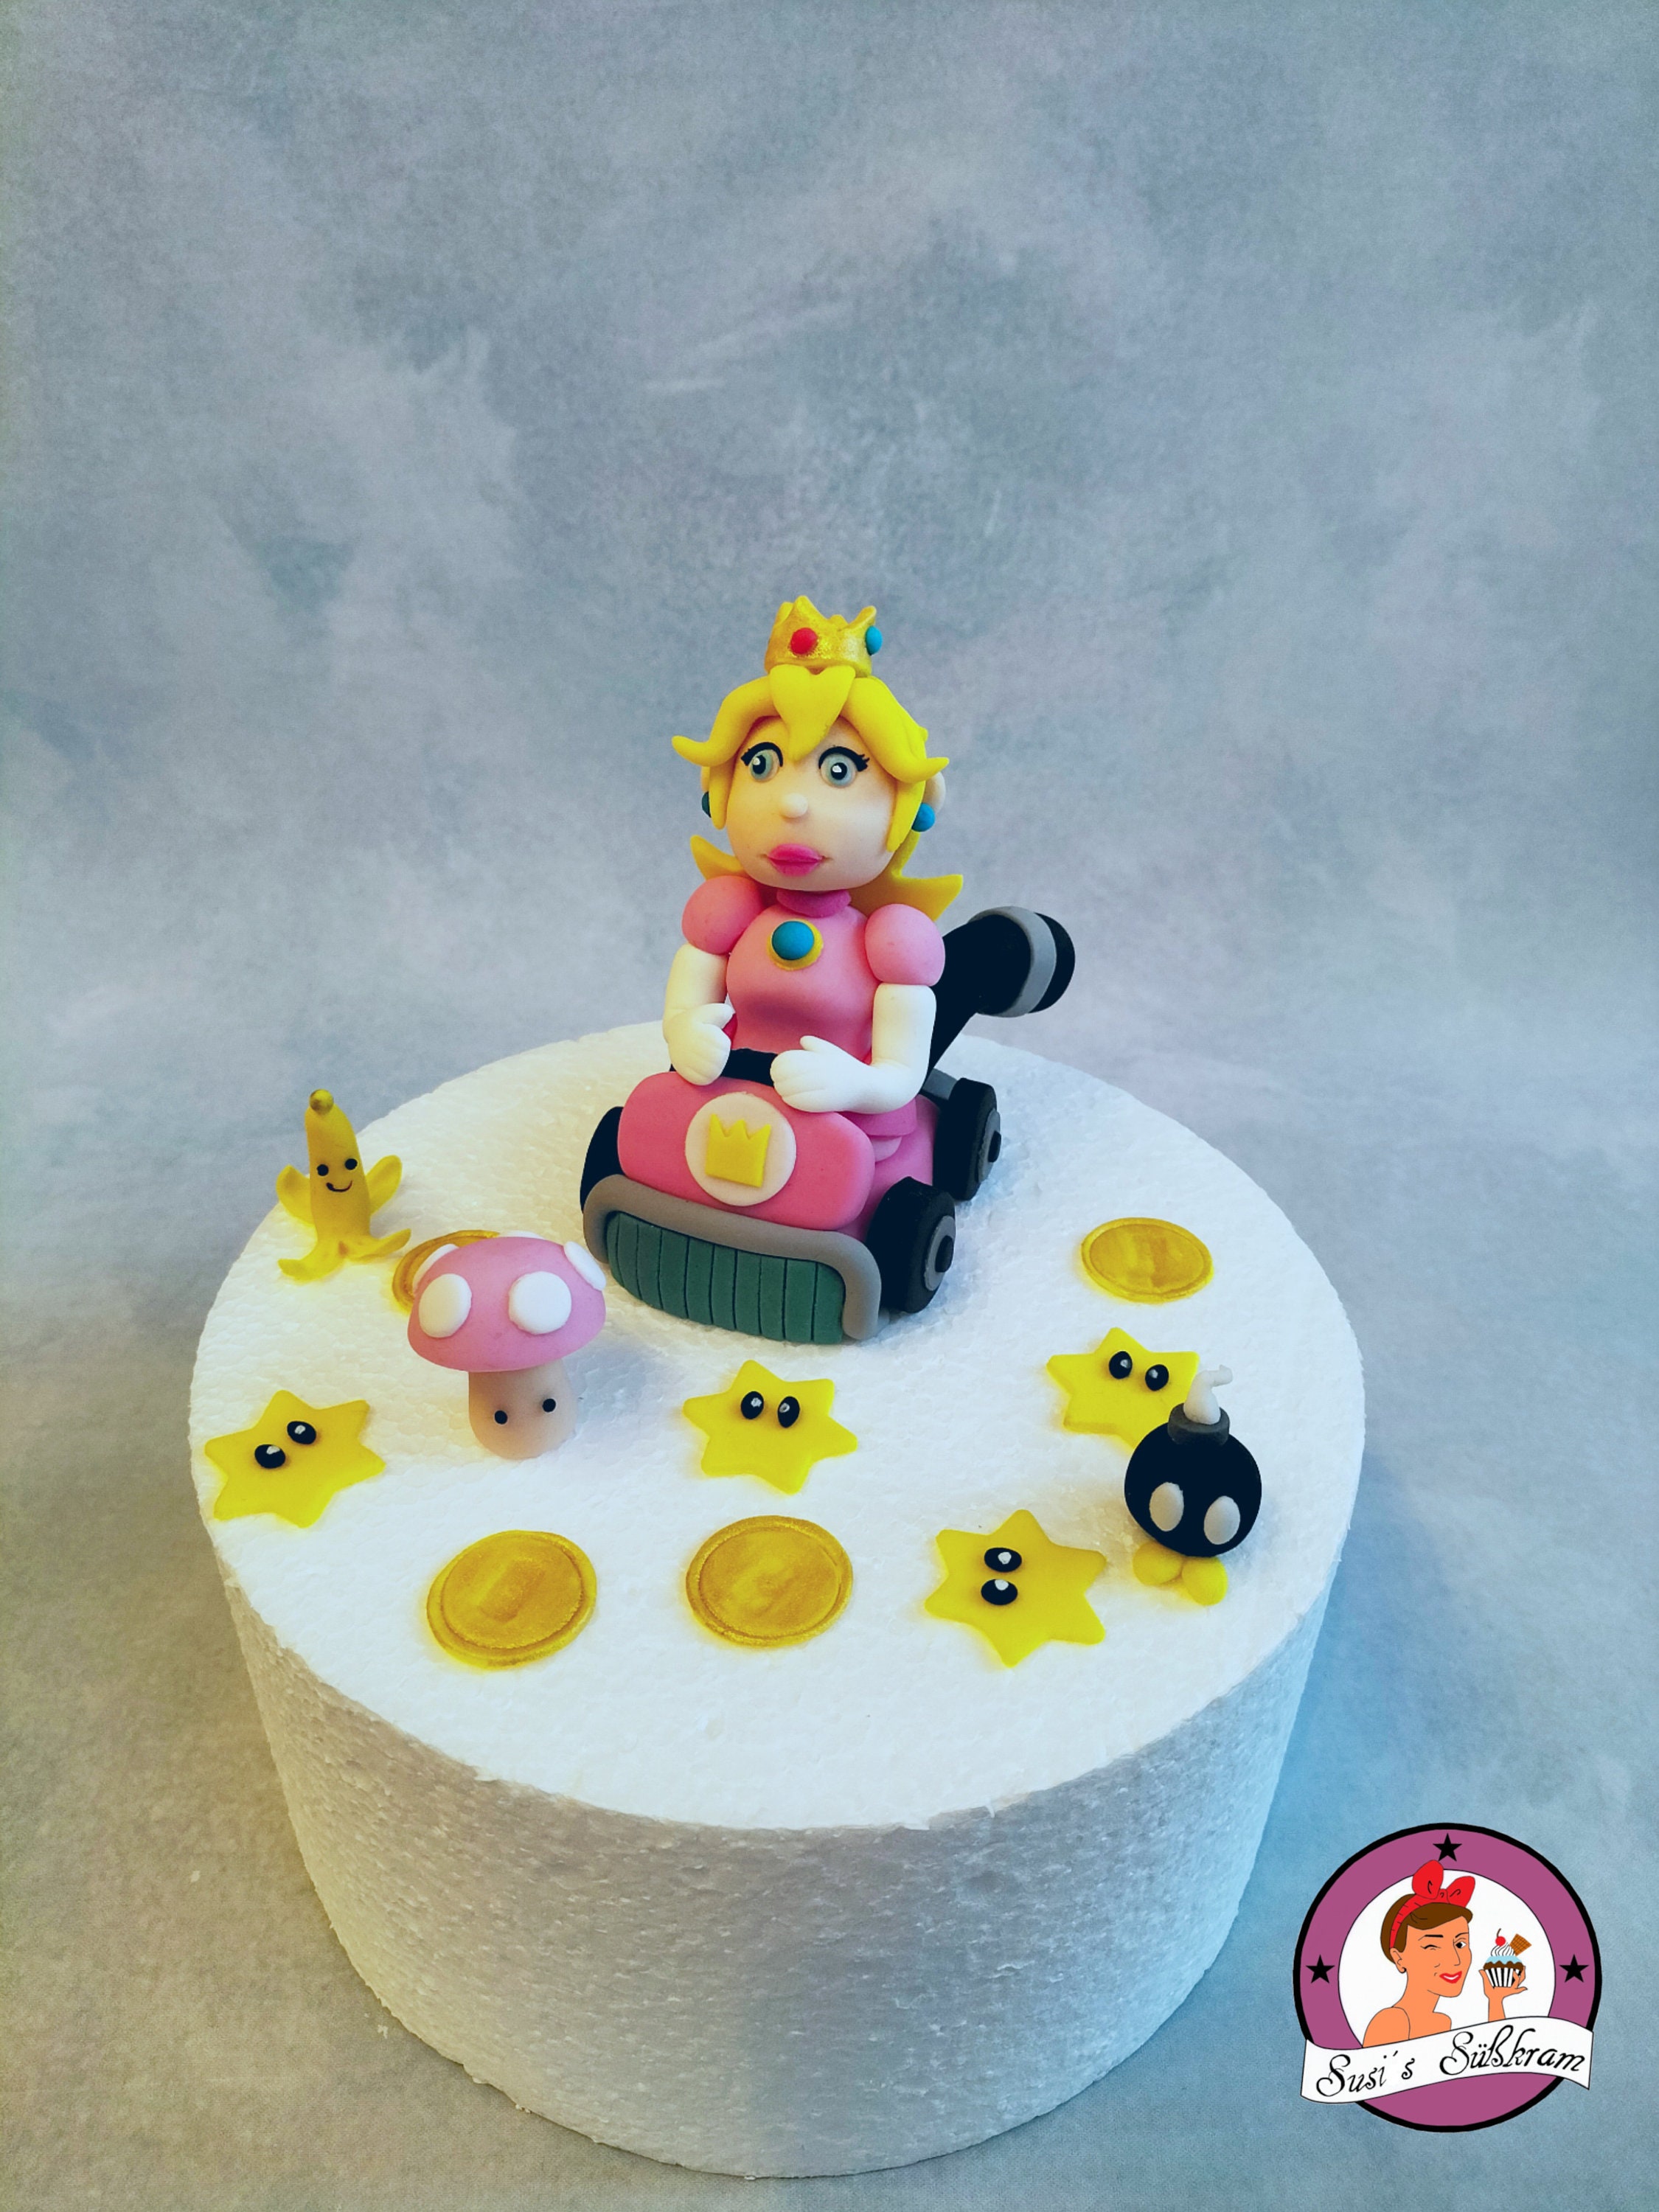 Décoration de gâteau Mario Kart, figurine fondant similaire